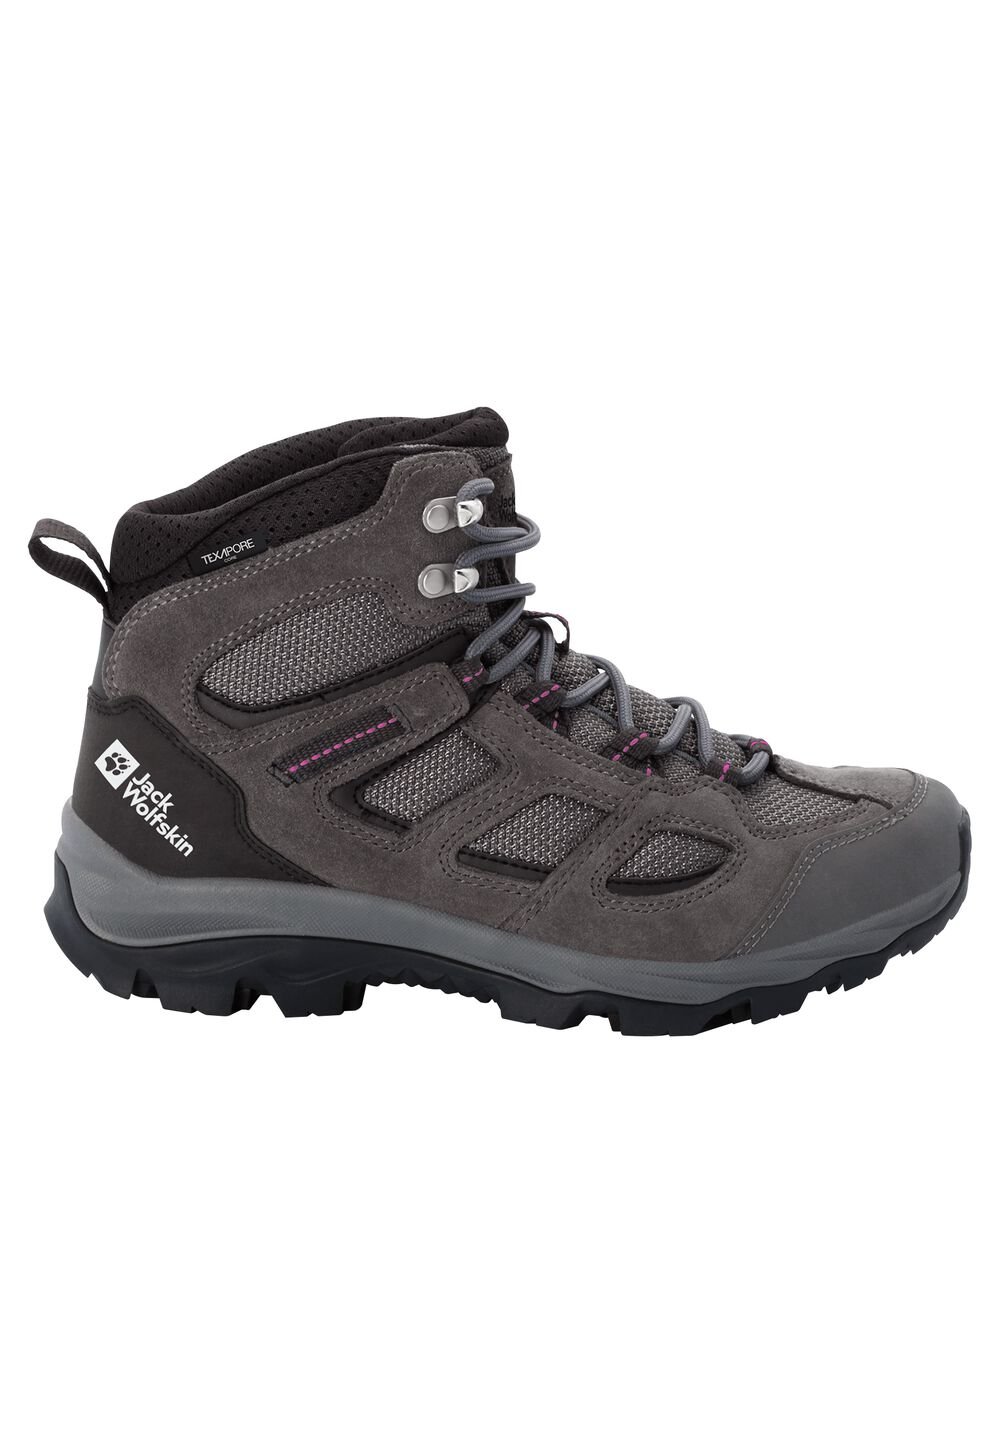 Chaussures de randonnée imperméables femmes Vojo 3 Texapore Mid Women 3 gris tarmac grey / pink